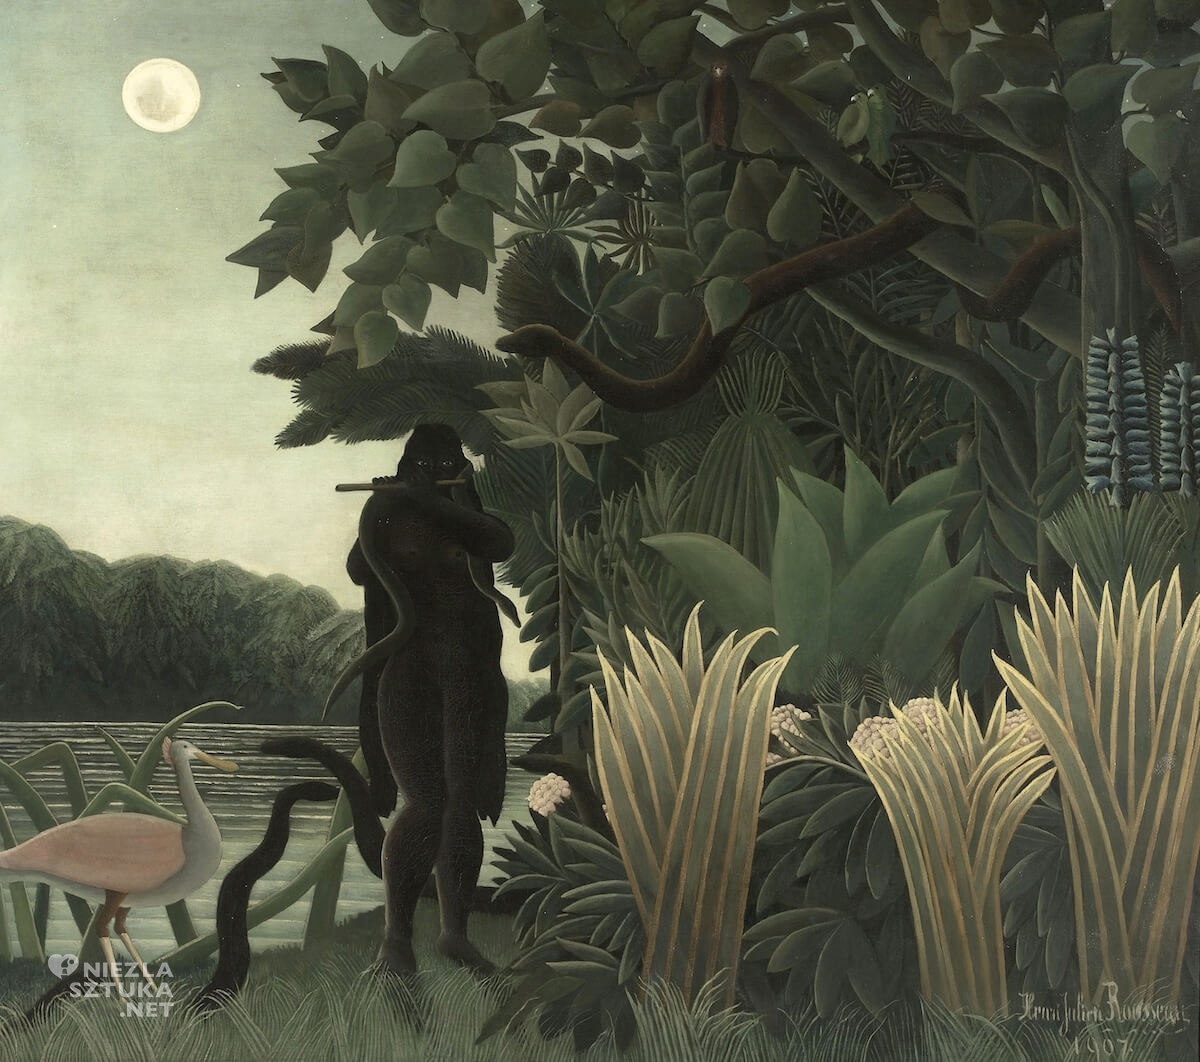 Henri Rousseau, Zaklinaczka węży, malarstwo naiwne, prymitywizm malarstwo, Niezła sztuka